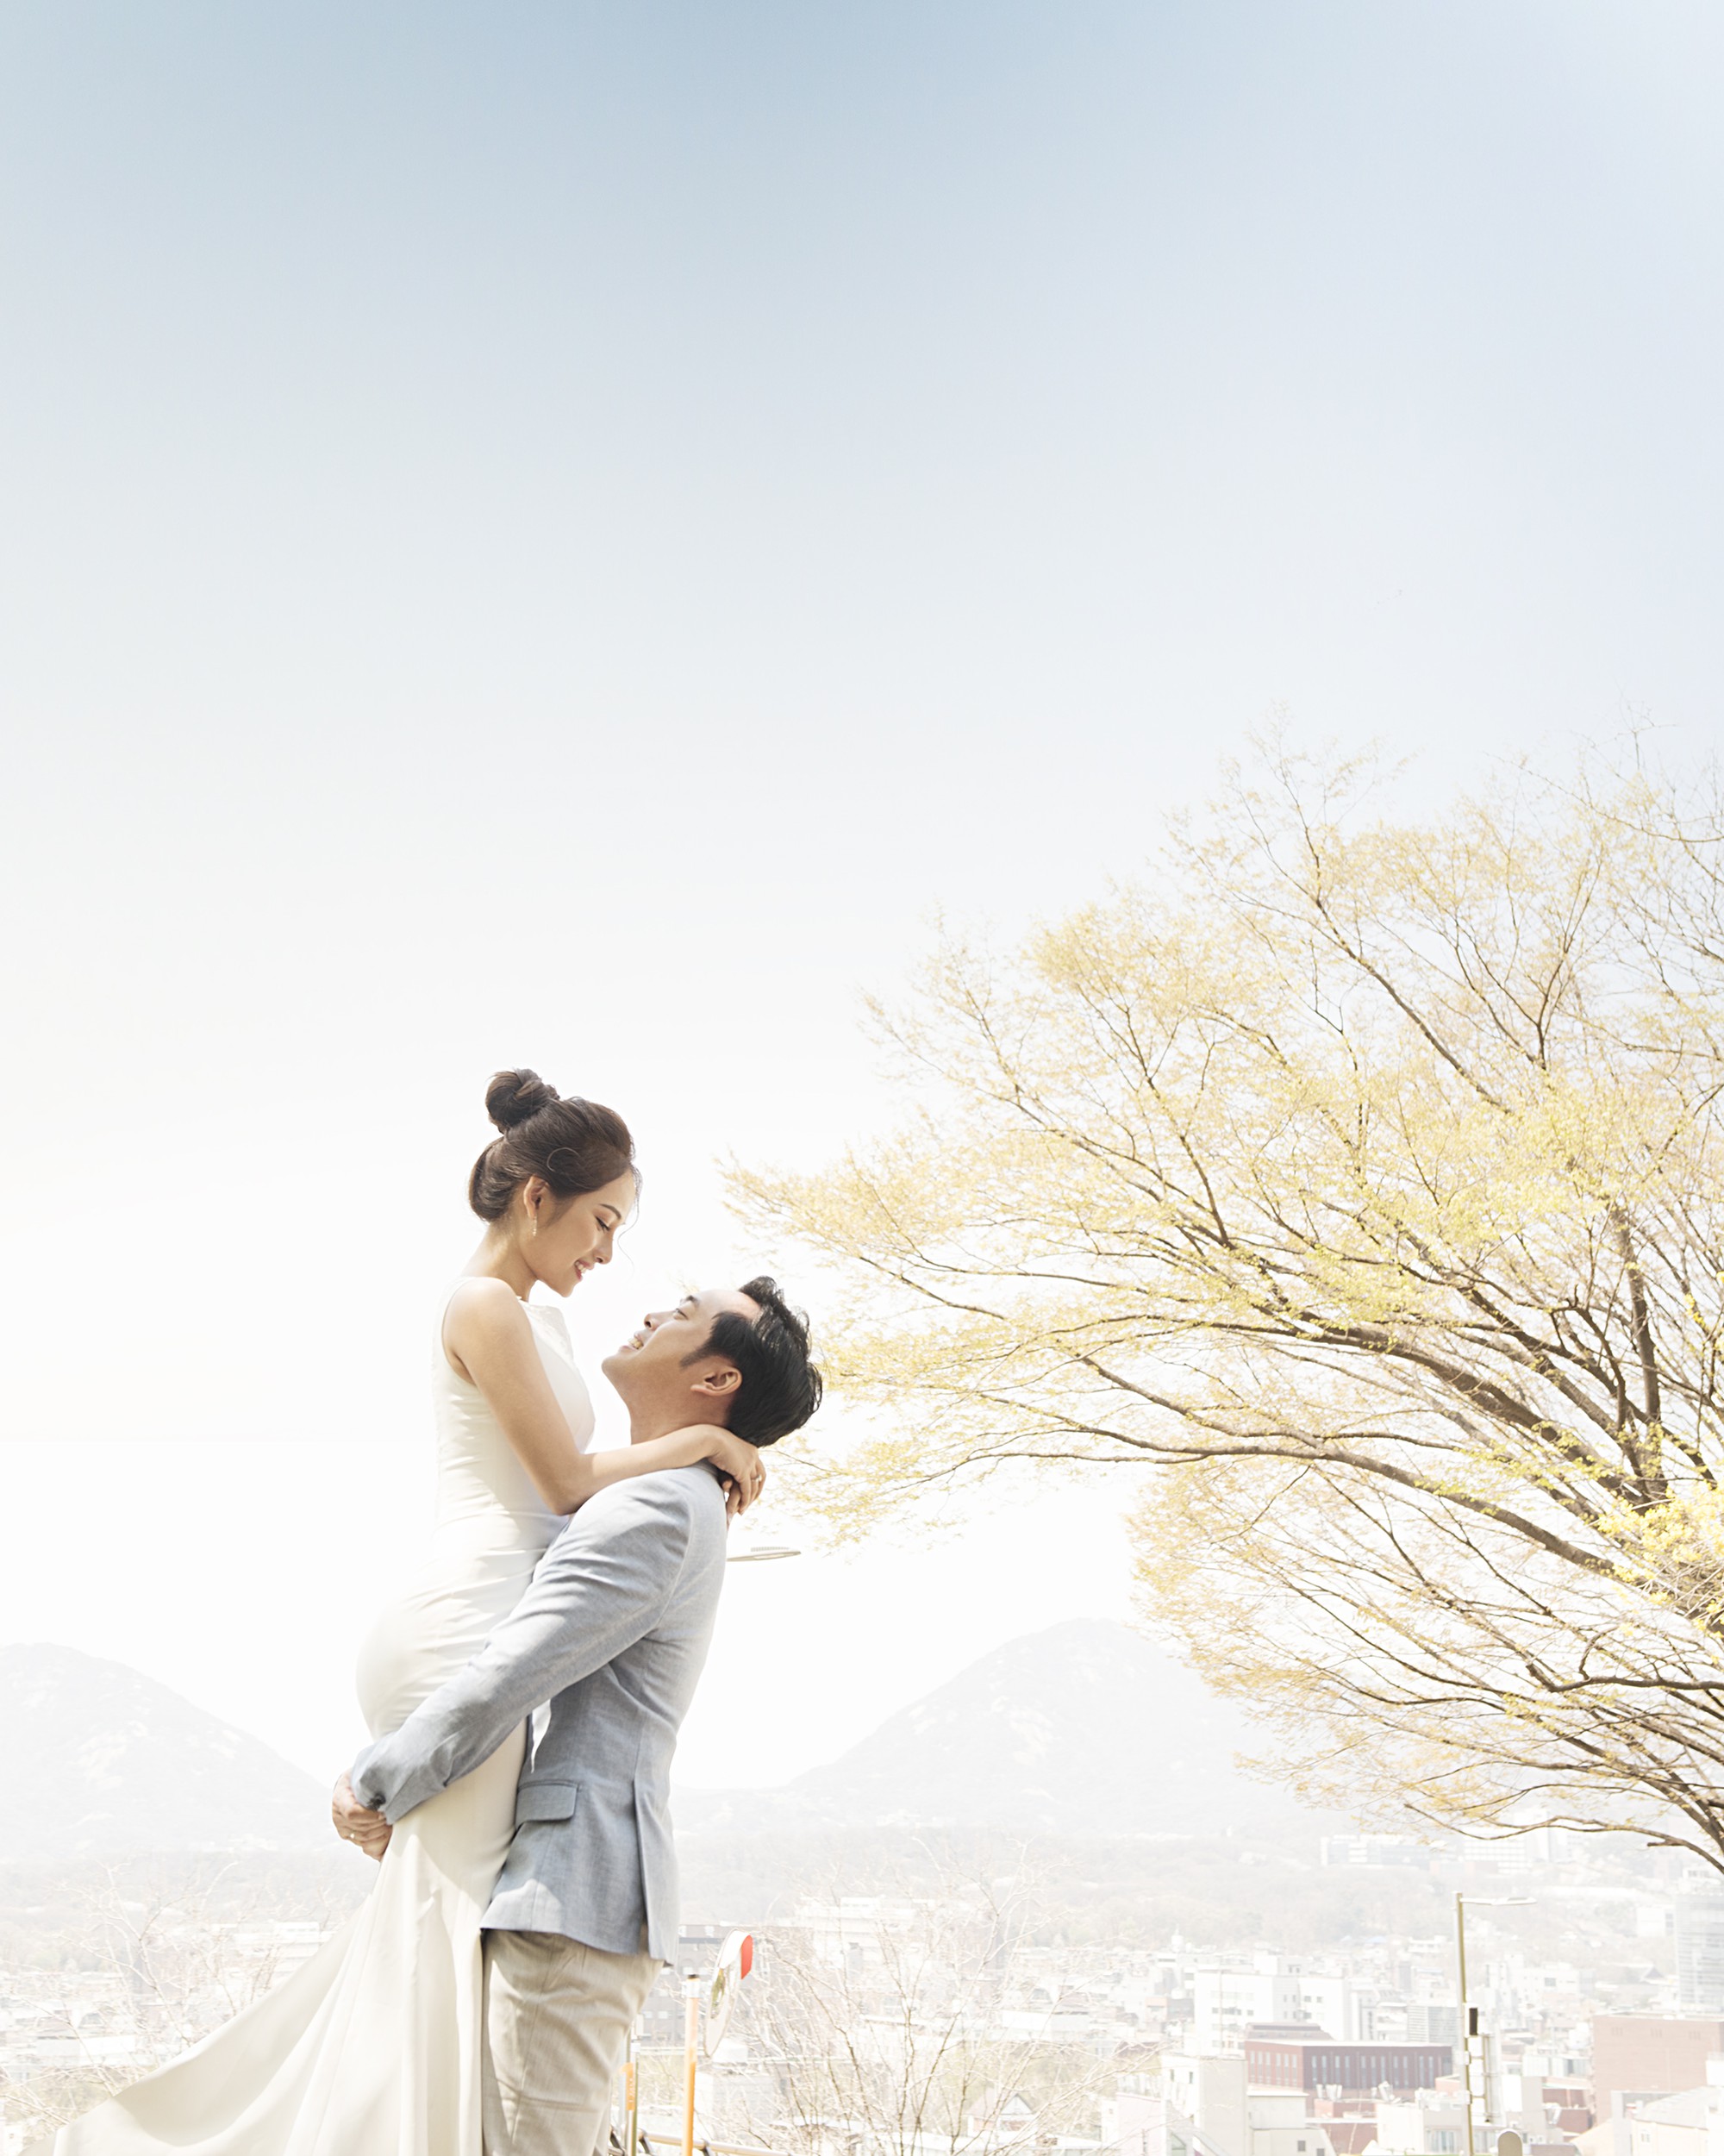 Ảnh cưới đẹp như phim chụp tại Hàn Quốc của Dương Khắc Linh và vợ trẻ kém 13 tuổi - Ảnh 10.